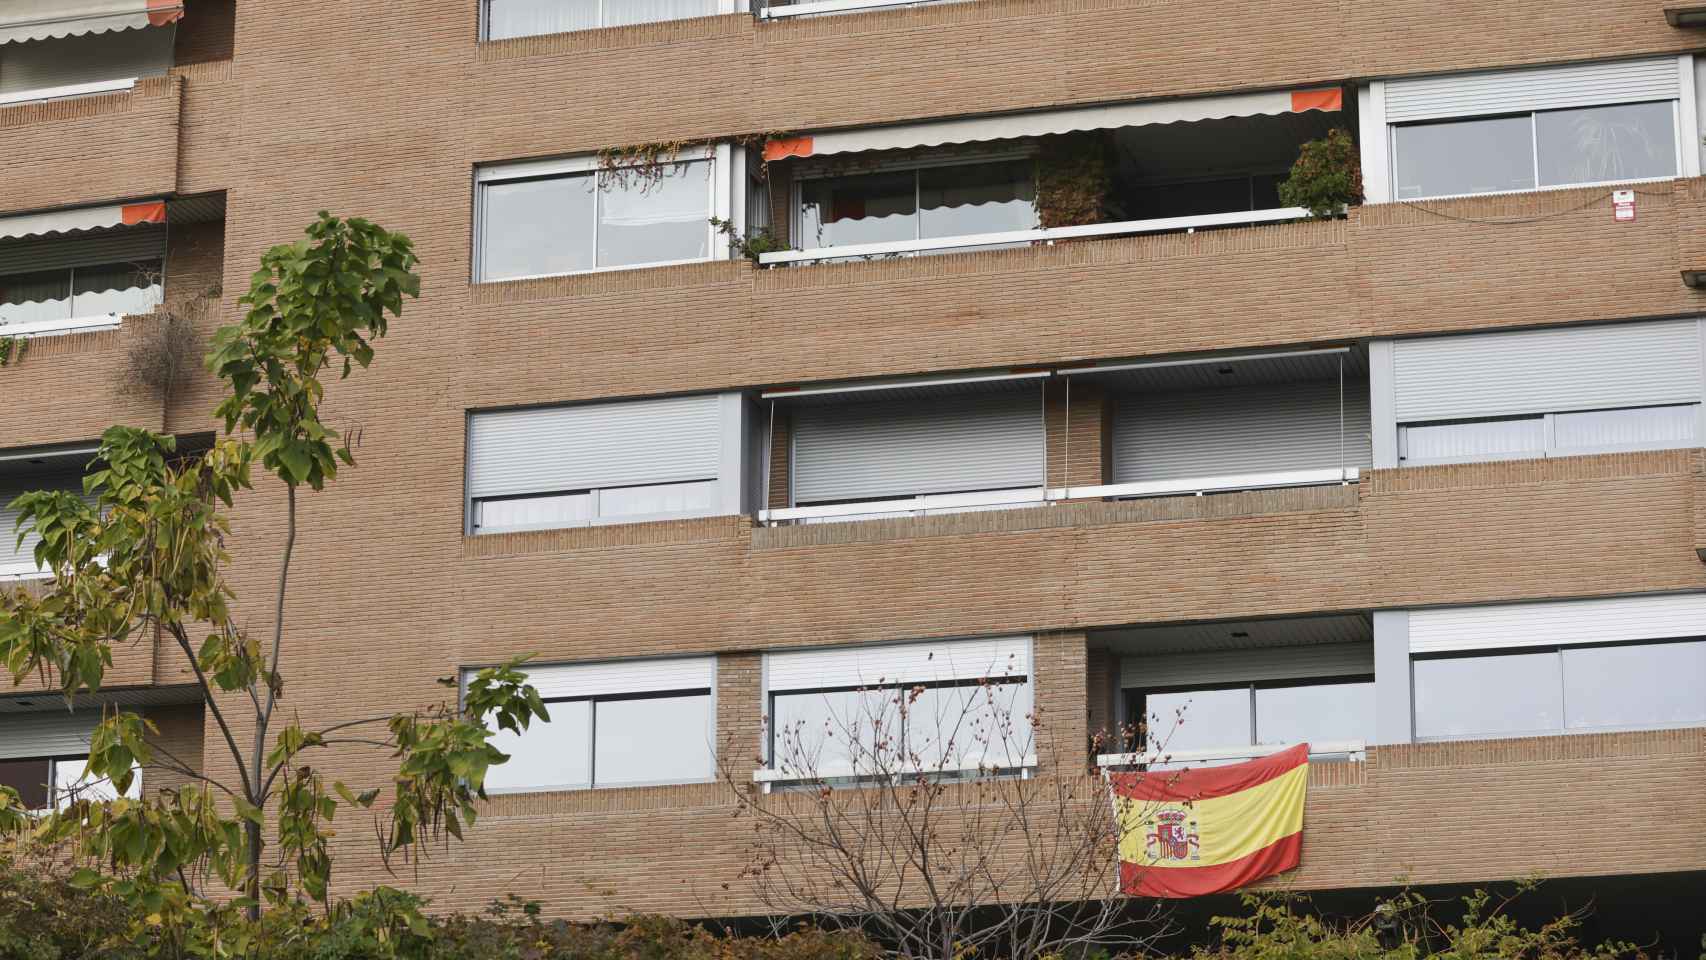 El día de la jura de Leonor, la infanta Elena engalanó su balcón con una bandera de España.